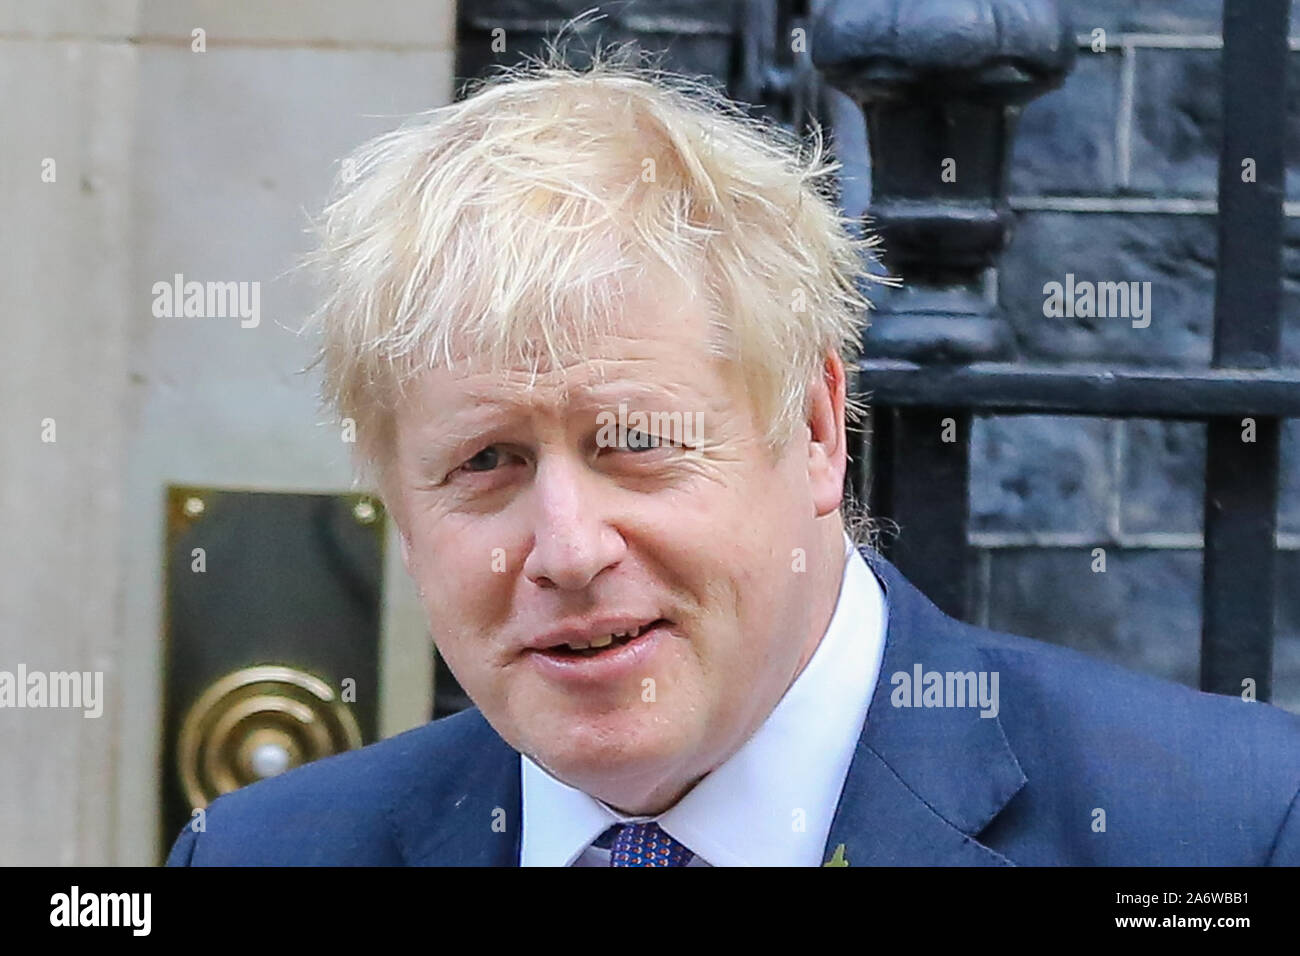 El Primer Ministro británico, Boris Johnson en los pasos del nº 10 de Downing Street en el día el SPM, debatir y votar sobre su propuesta para una elección general el 12 de diciembre de 2019. El Reino Unido no va a dejar la Unión Europea el 31 de octubre de 2019 como los líderes de la Unión Europea ha concedido una prórroga para Brexit hasta el 31 de enero de 2020. Foto de stock